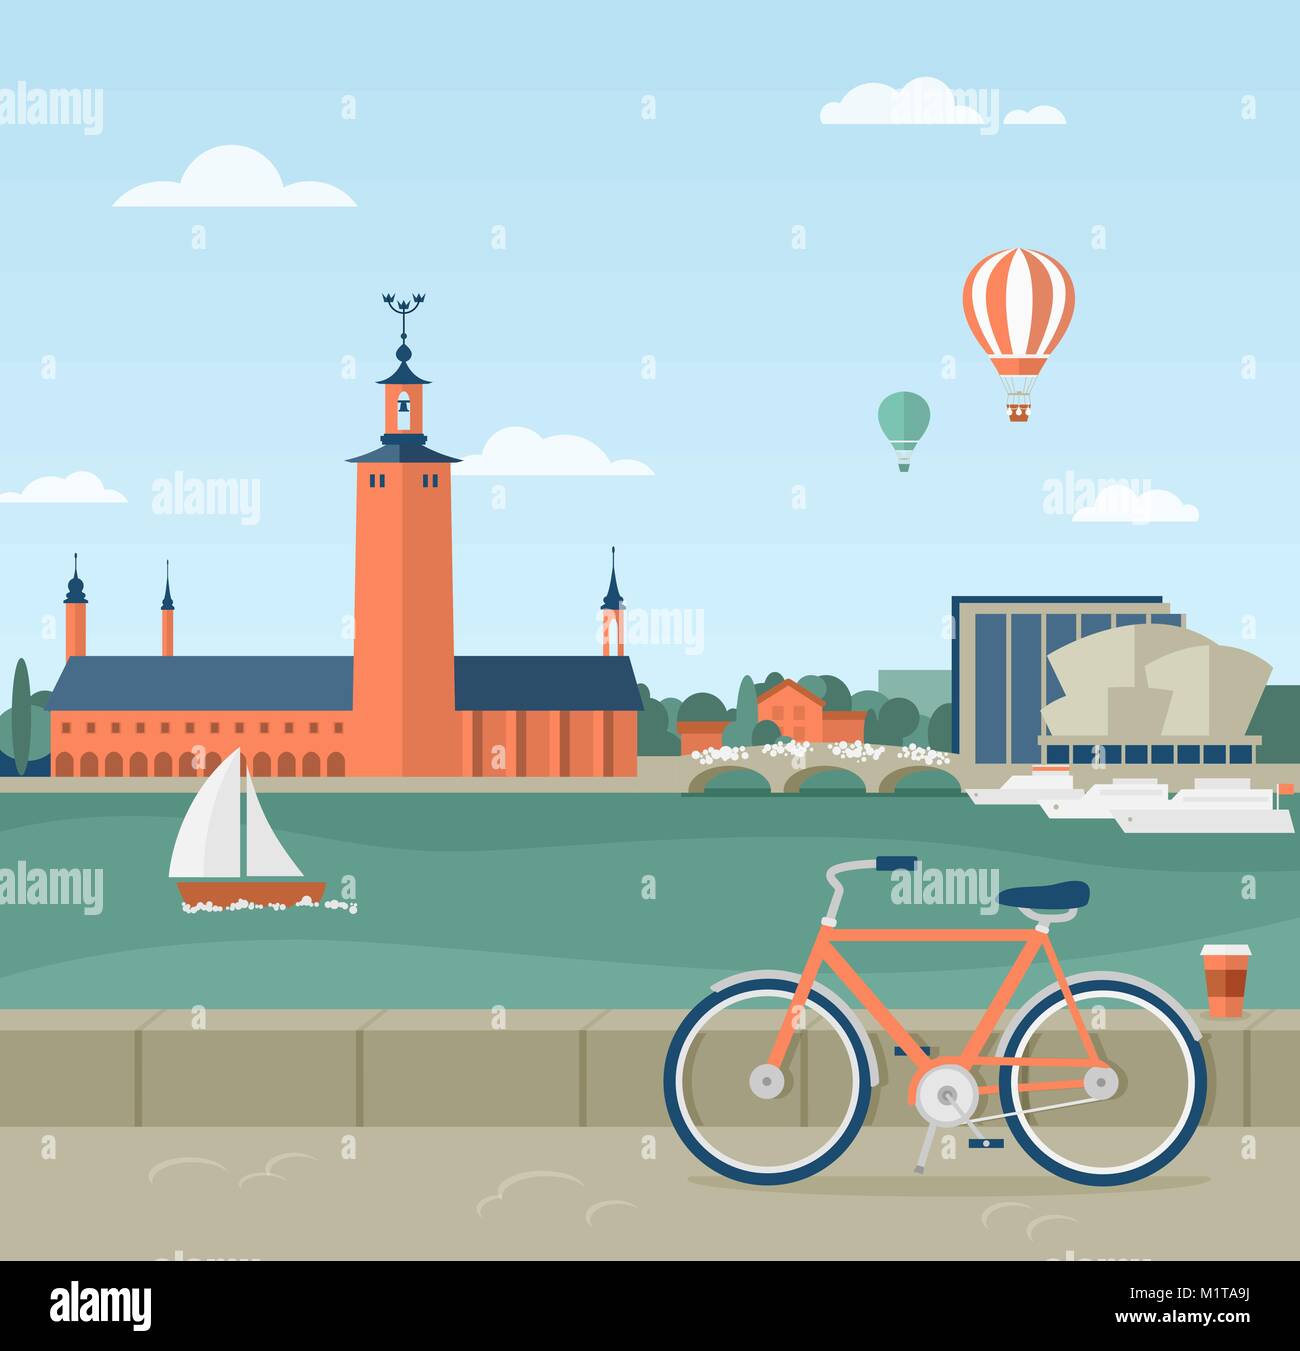 Flache Darstellung der Strandpromenade in Stockholm, Schweden. Blick auf das Rathaus. Im Vordergrund ein Fahrrad und einer Tasse Kaffee Stock Vektor